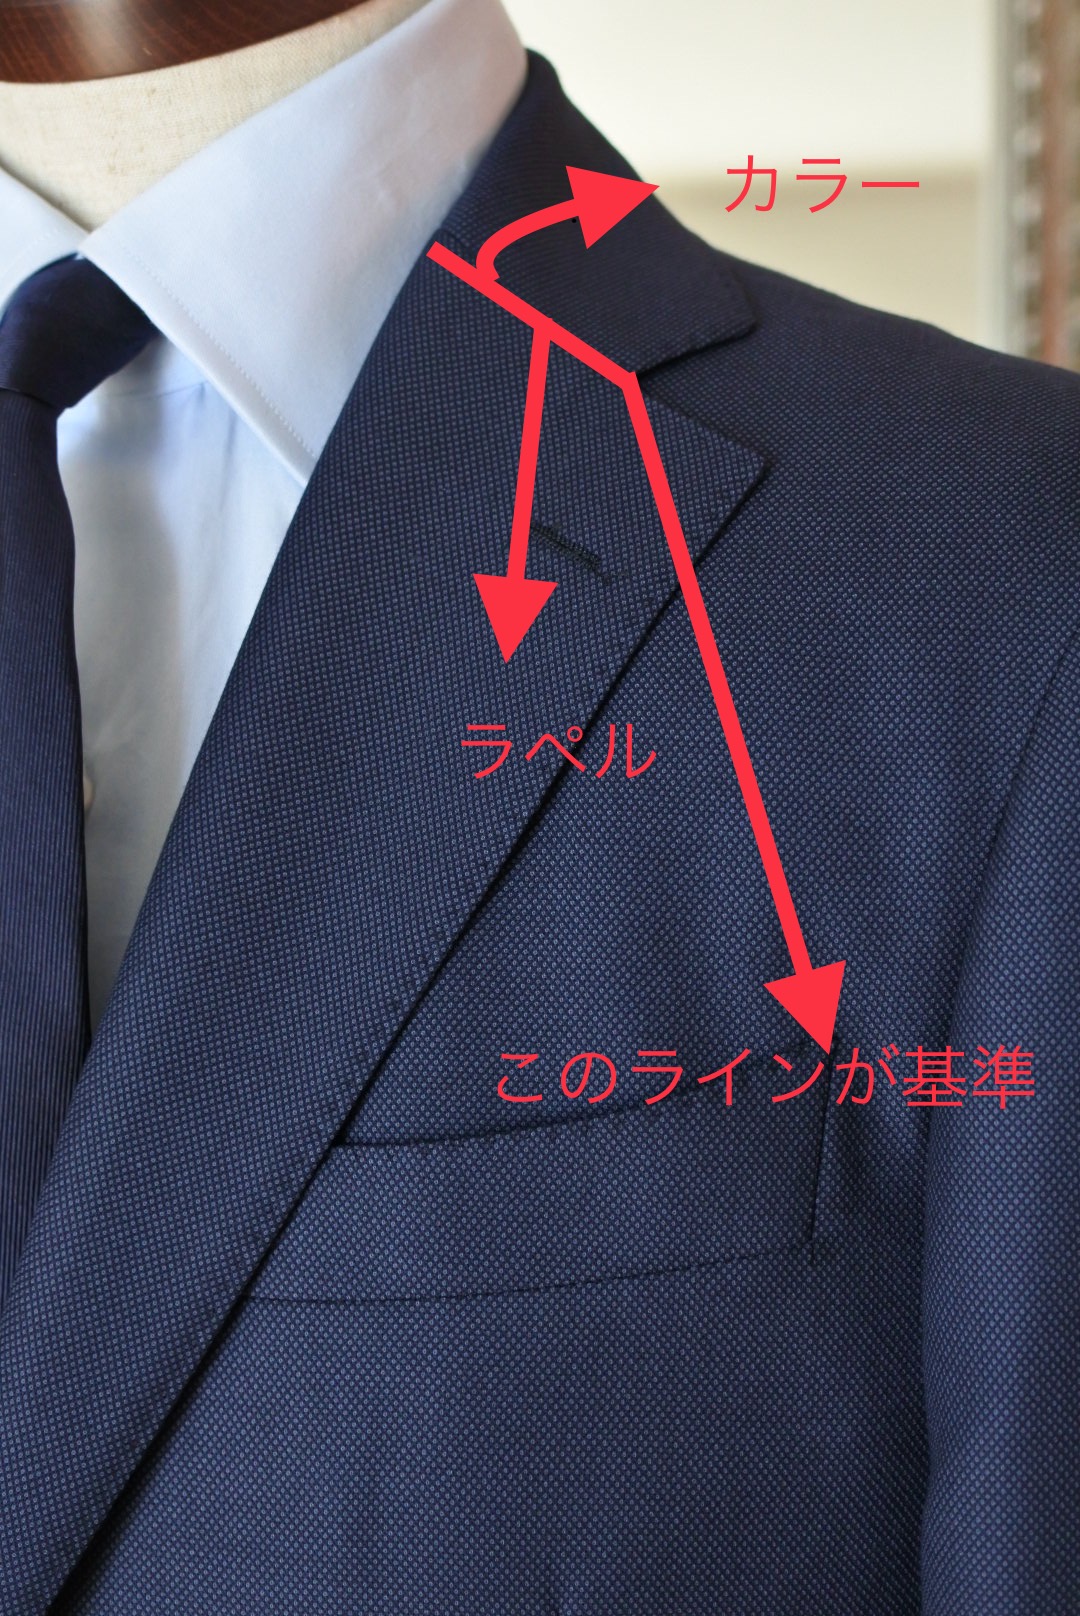 スーツの襟 ラペル の形で印象が変わることをご存知ですか